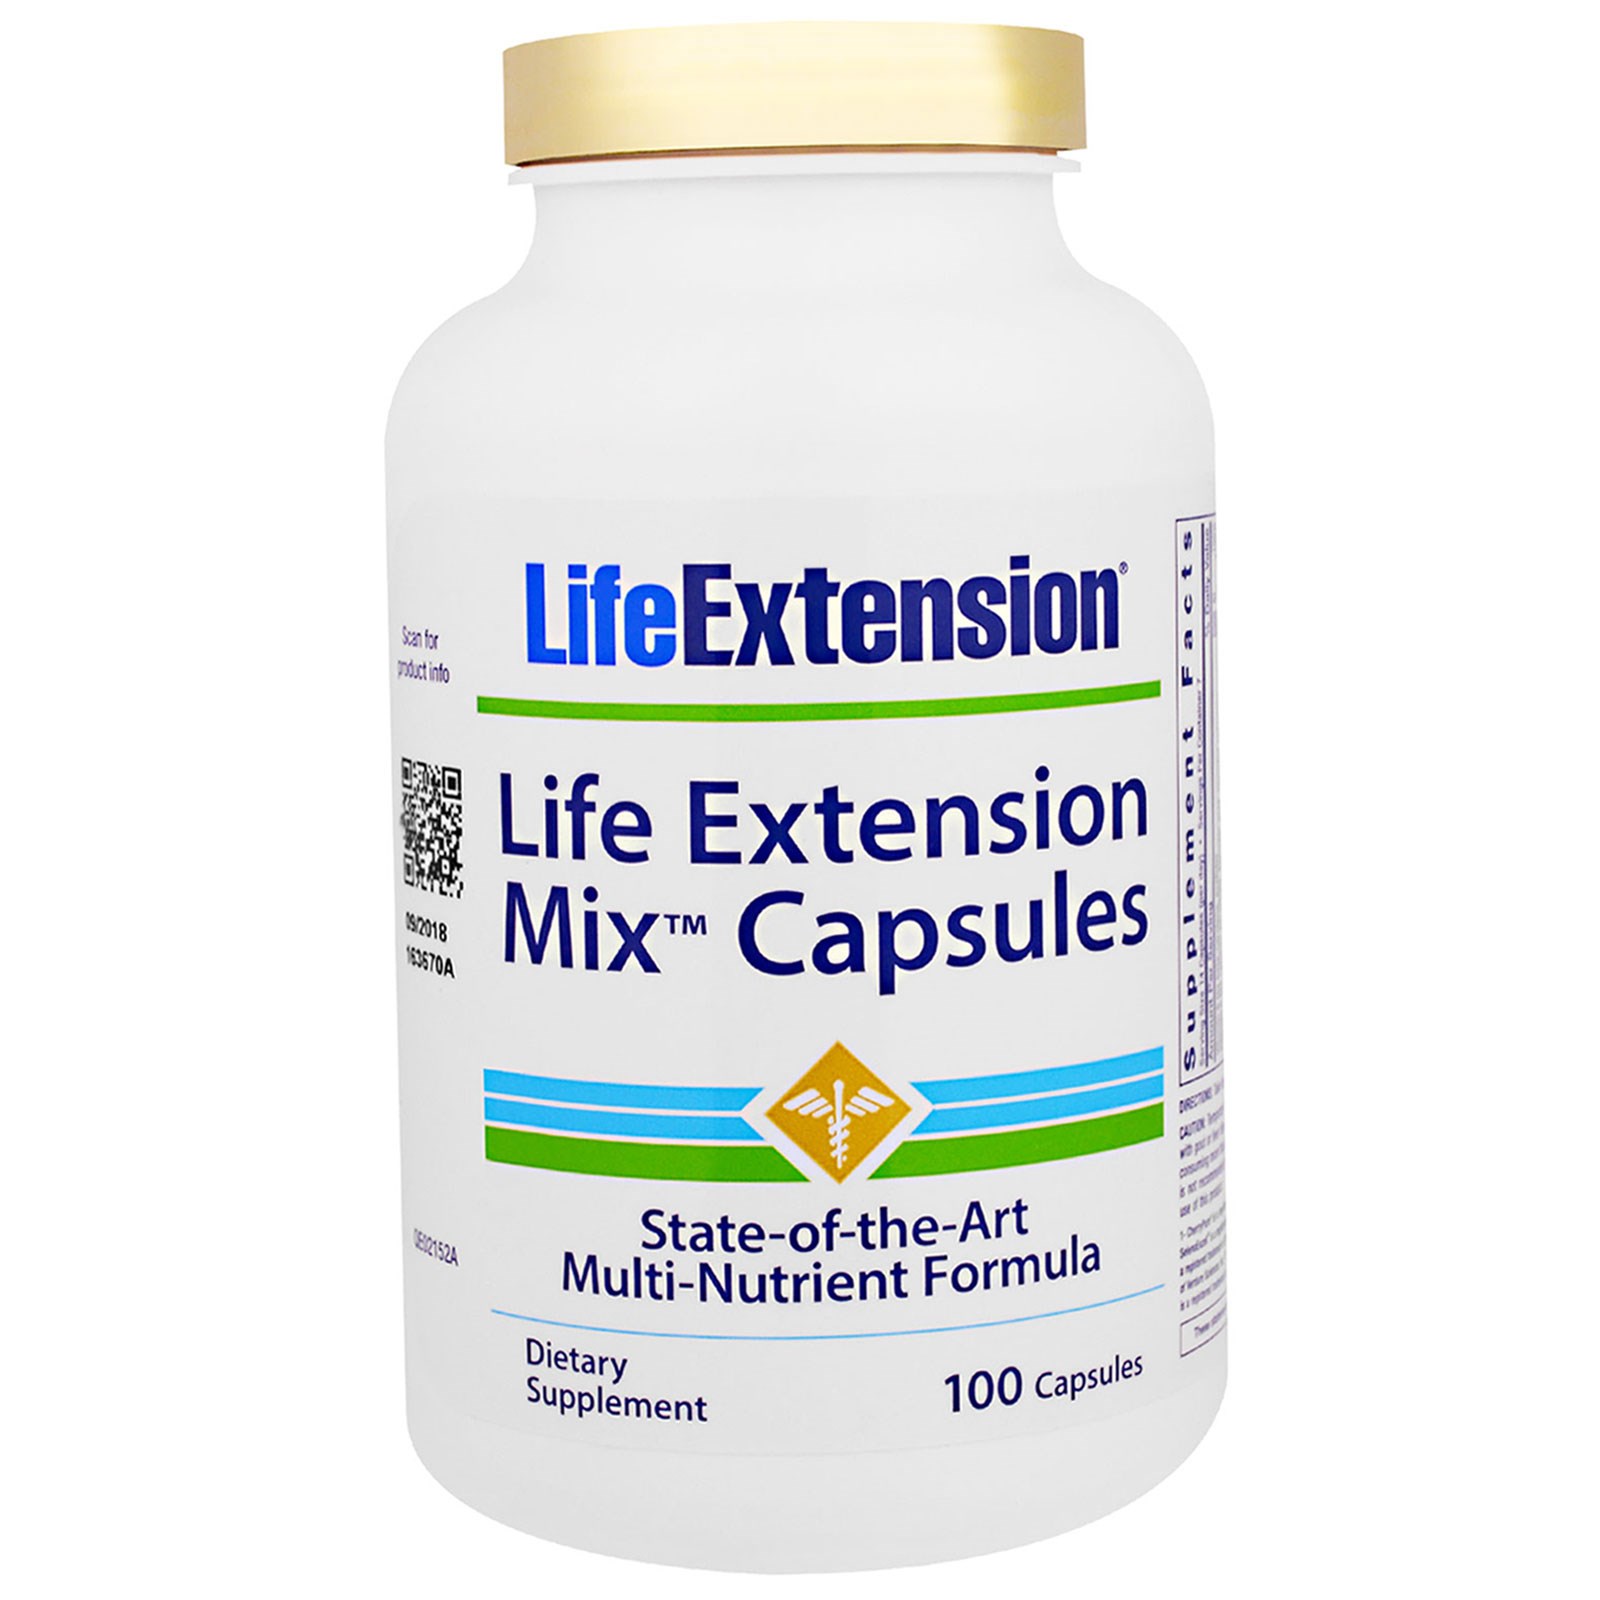 Life extension. Мультивитамины Life Extension. IHERB для продление жизни. Микс таблетки. Экстенсион.